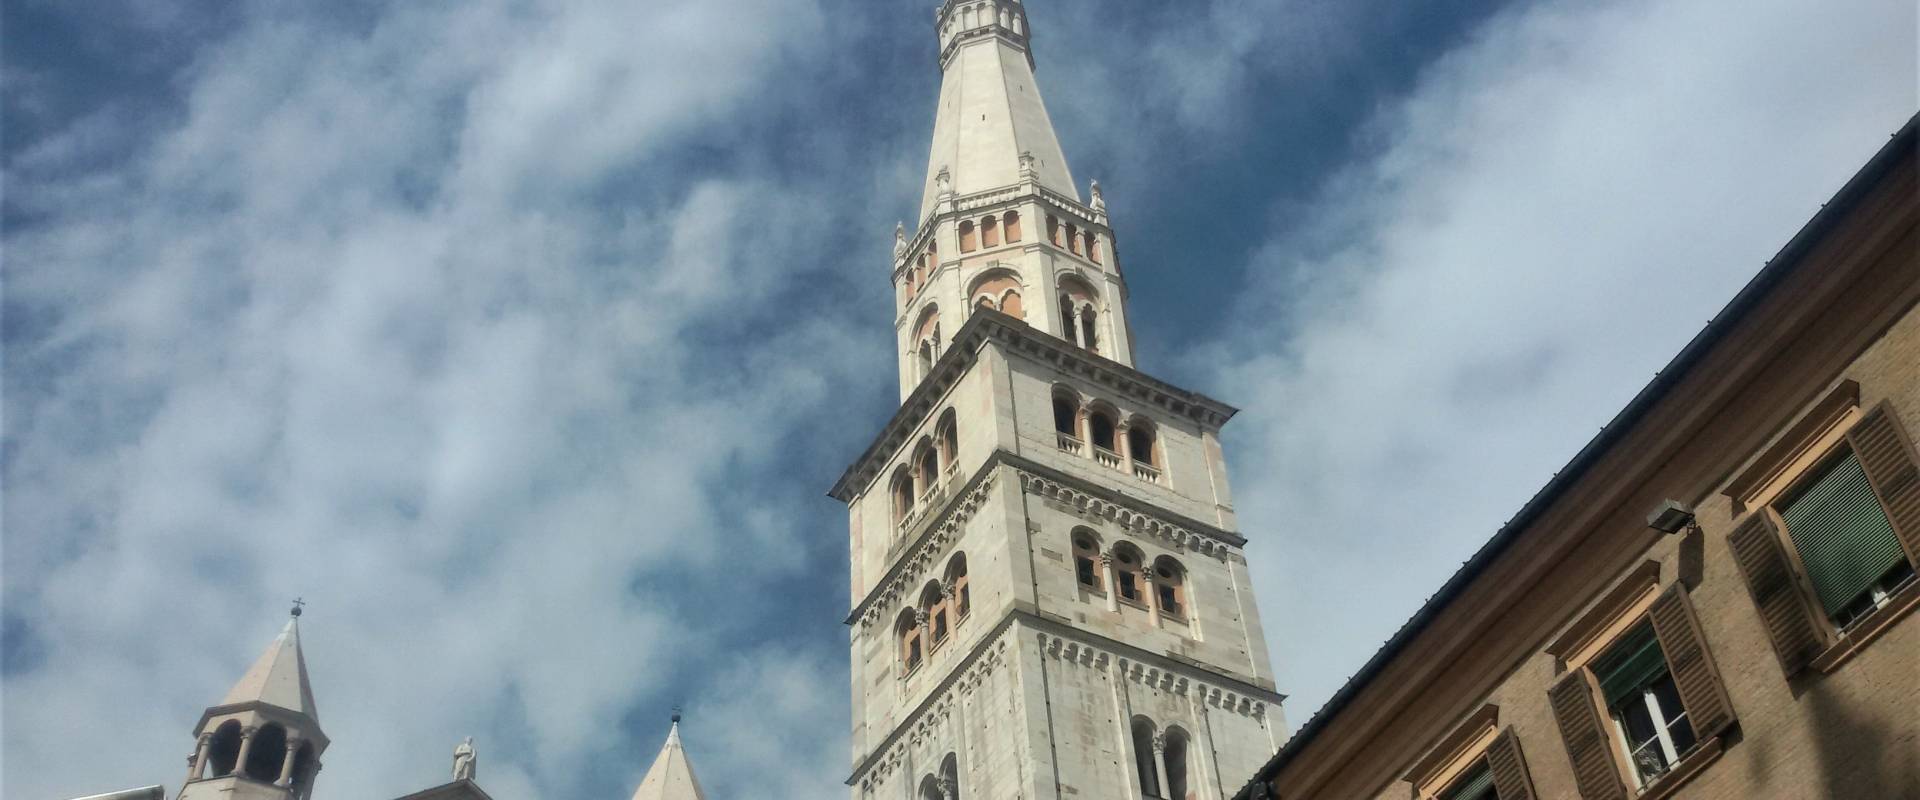 Torre della Ghirlandina - foto 15 foto di Ettorre - gregorio (ettorre(at)gmail(dot)com)